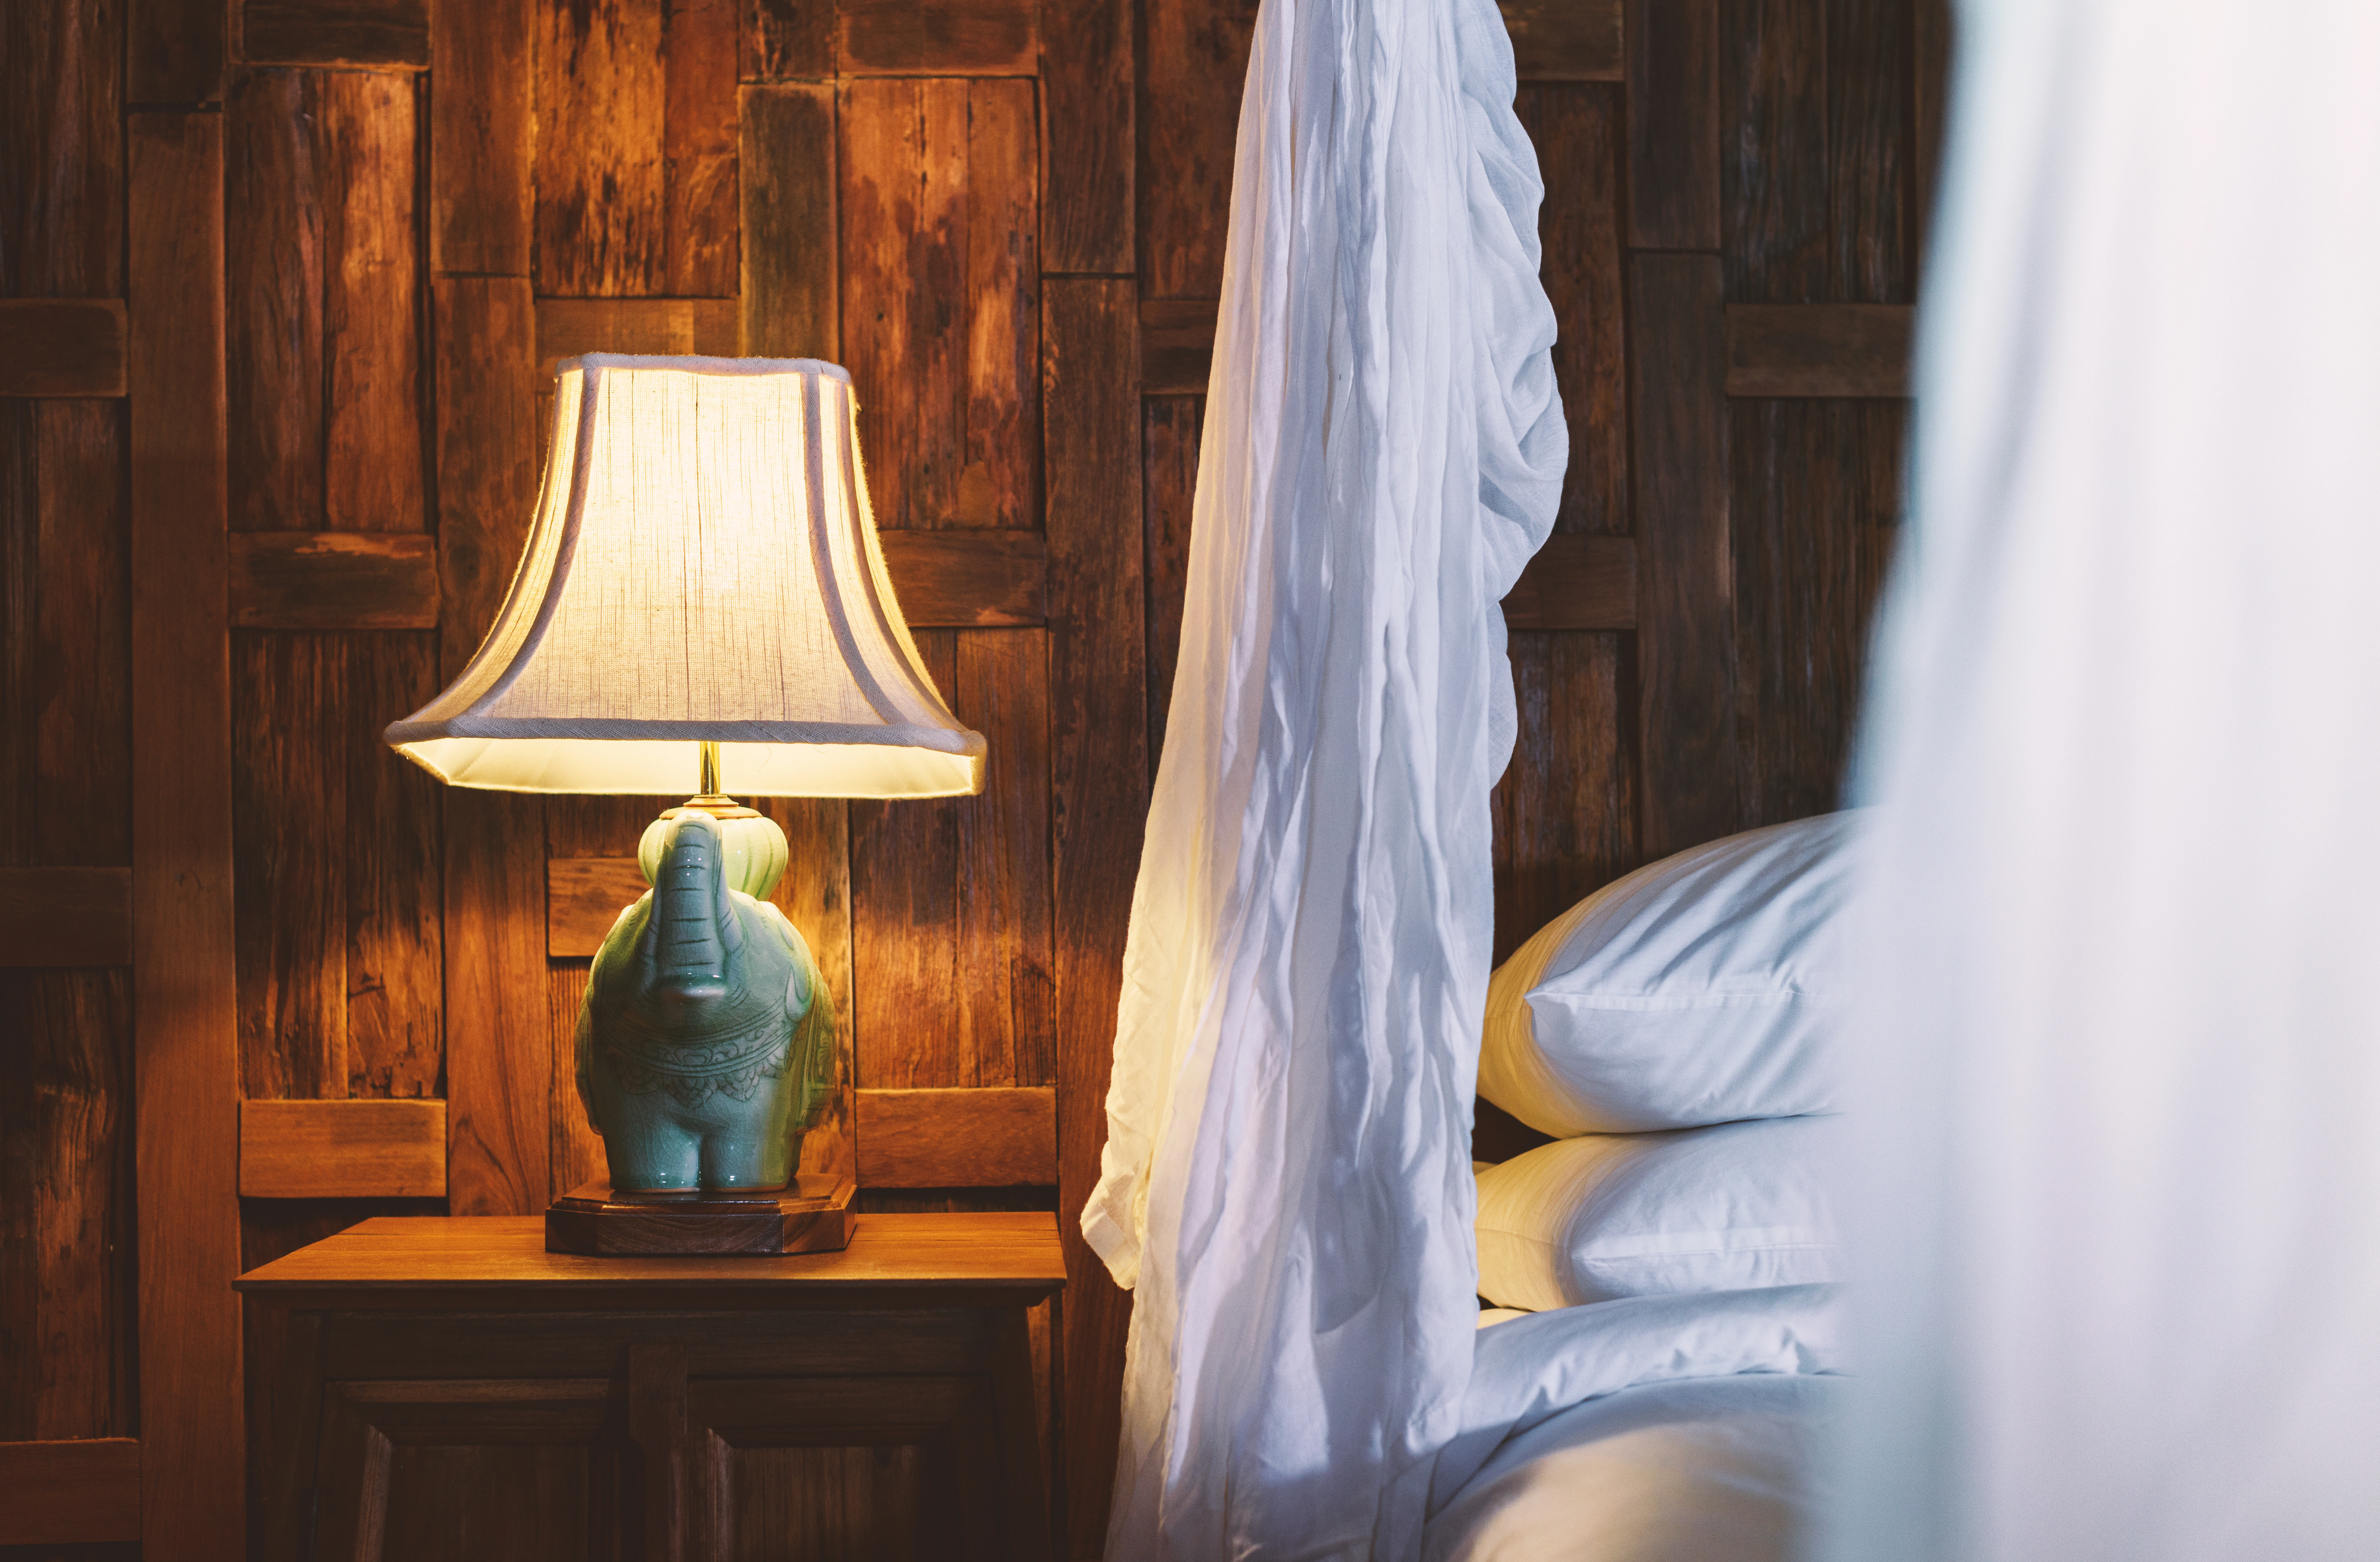 Inspiracja prezentująca sypialnię w kolorze brązowym z lampką nocną w stylu kolonialnym, styl kolonialny. Element charakterystyczny: lampka nocna w stylu kolonialnym